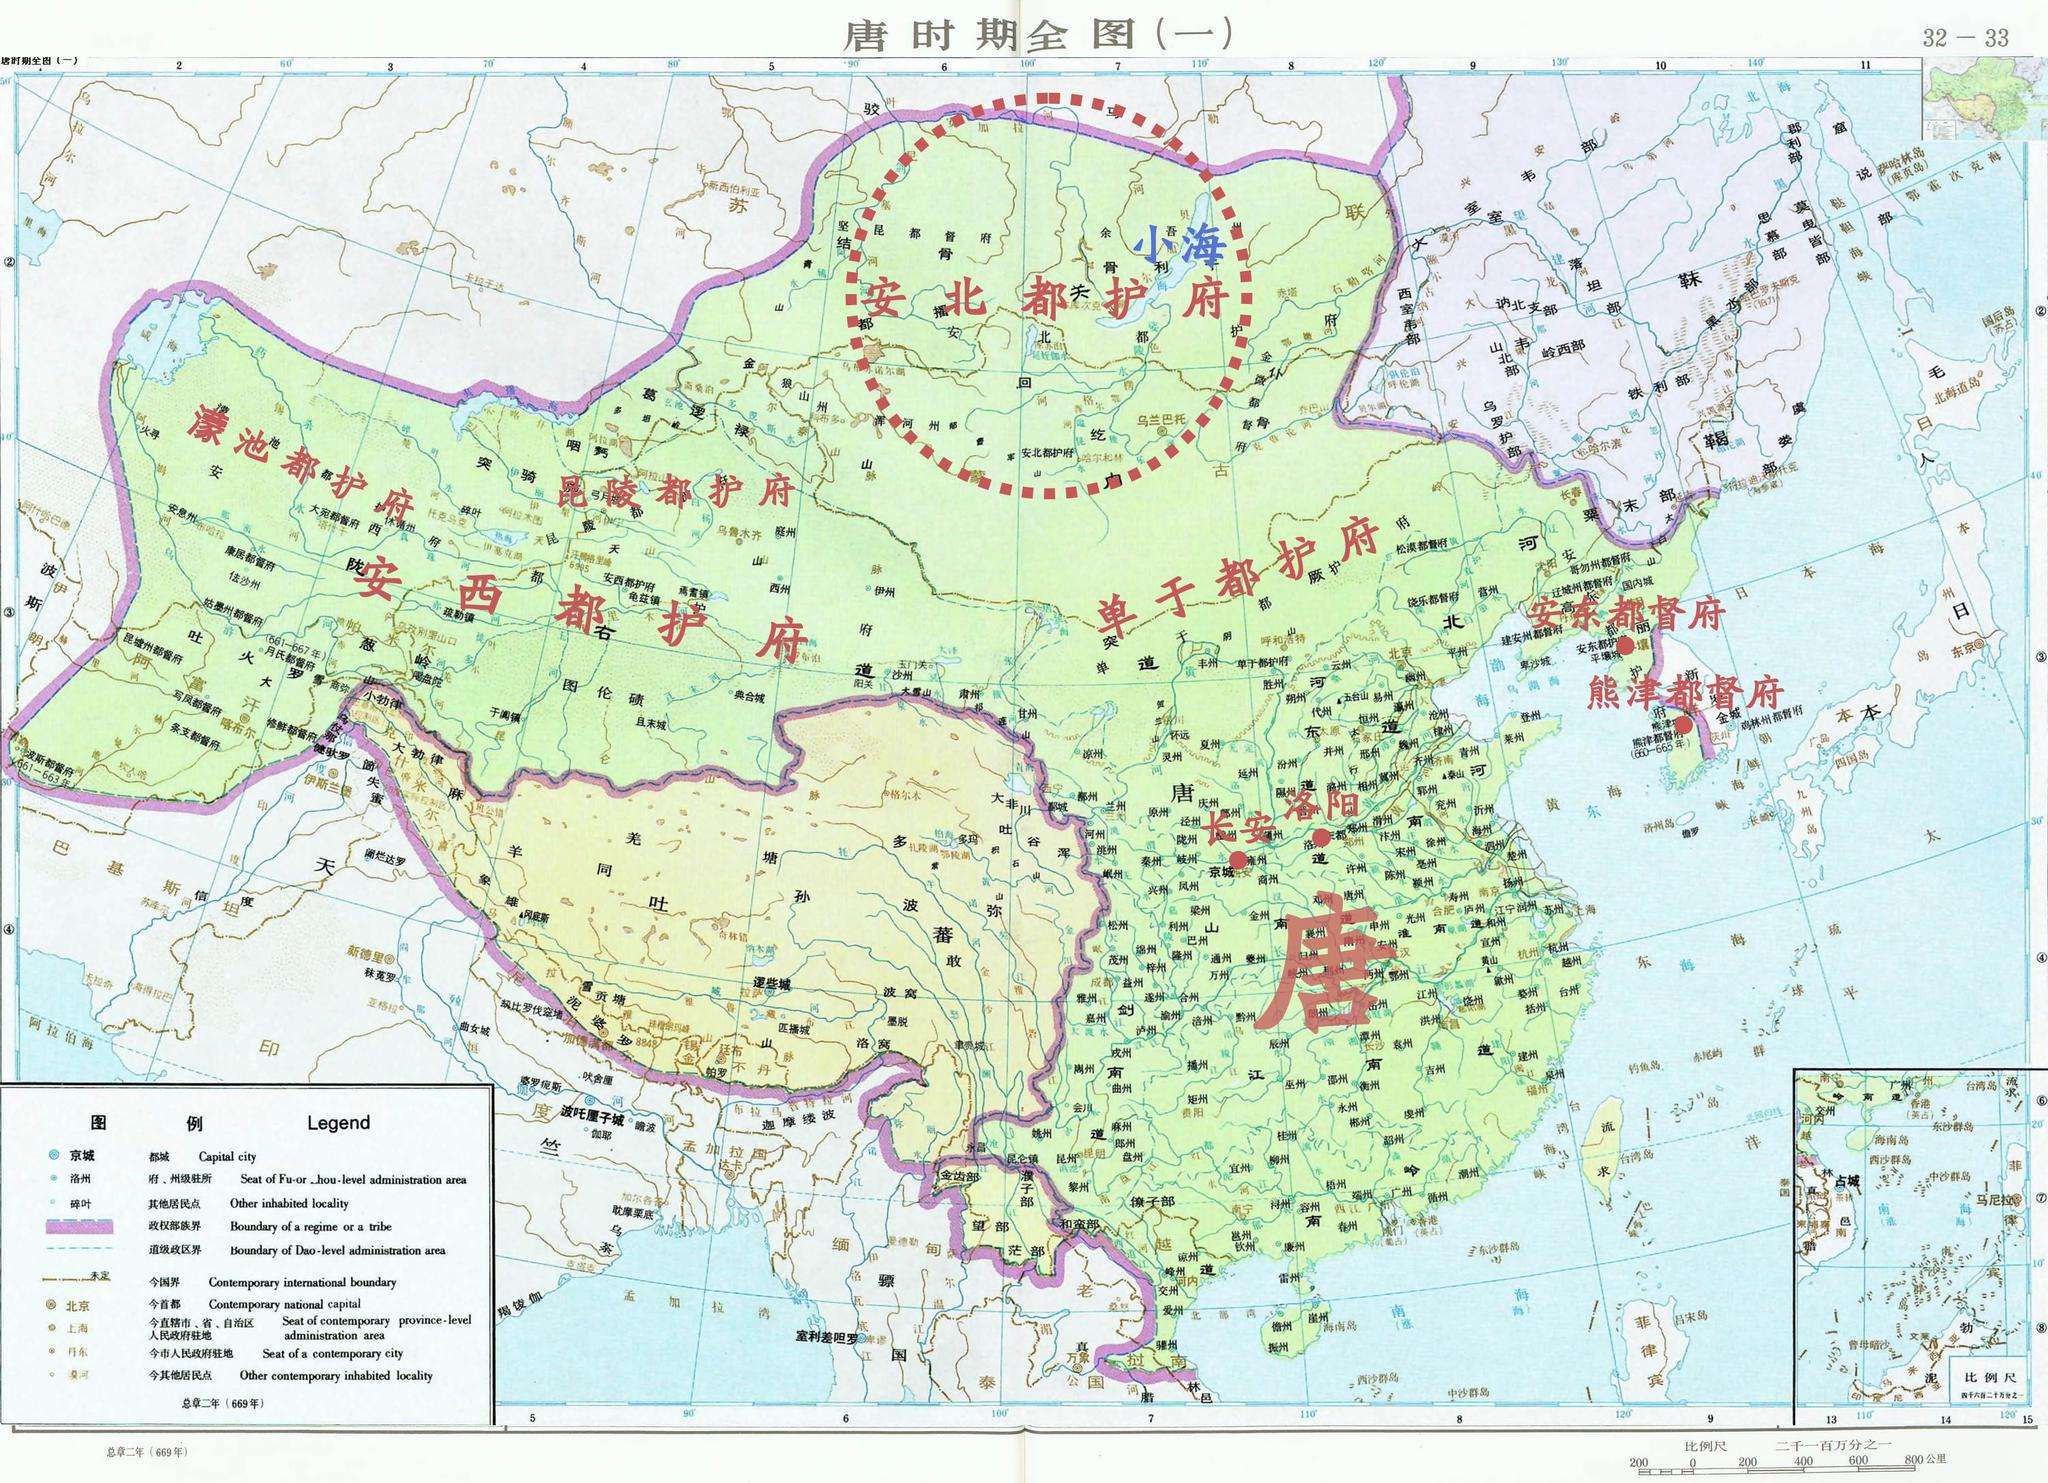 原创清朝曾在盛世割地世界第一大淡水湖和中国有何渊源